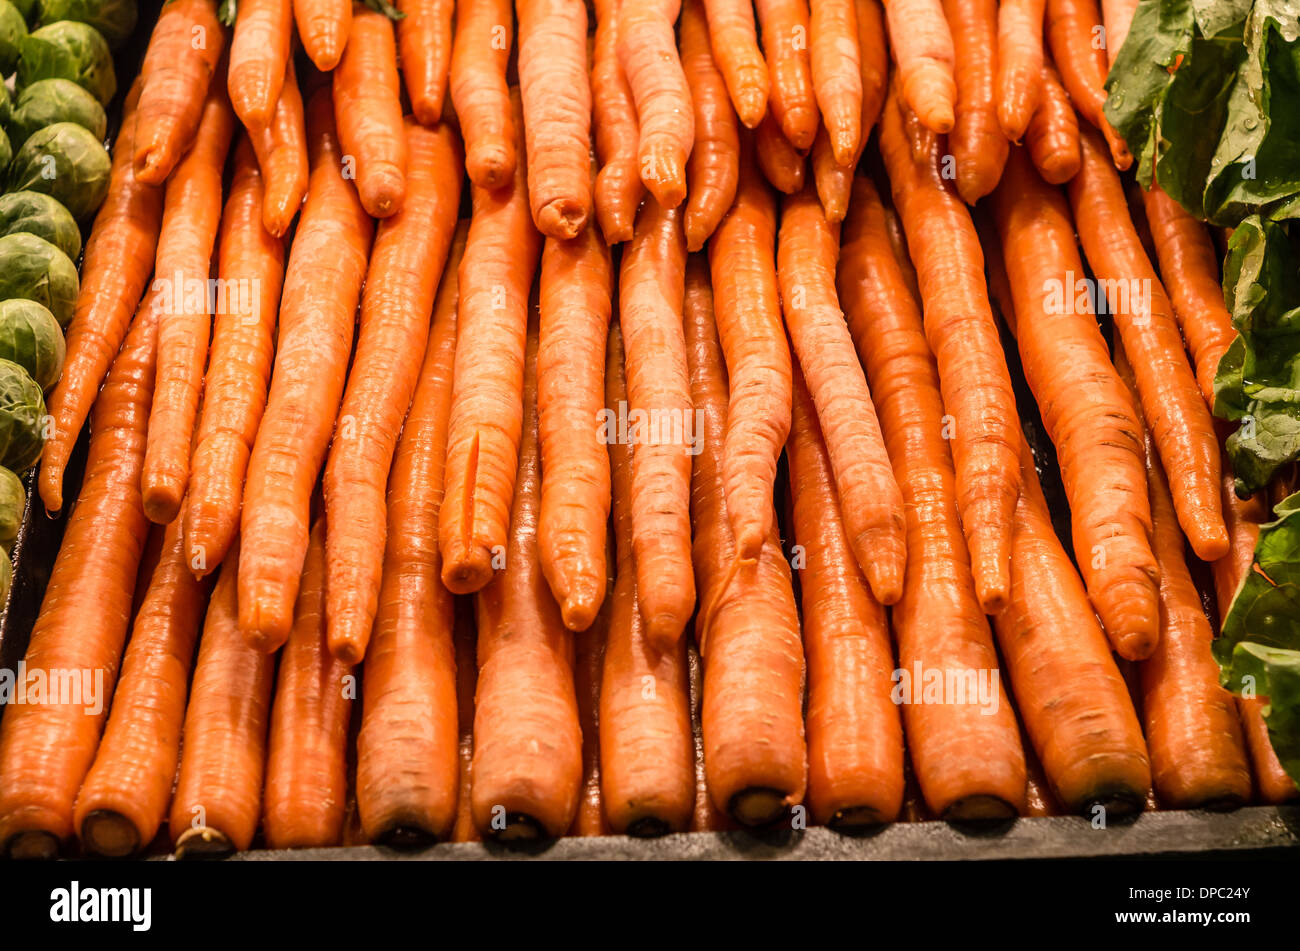 Bulk-Anzeige orange Karotten an einem Marktstand Produkte Lieferanten.  Pike Place Market in Seattle, Washington, USA Stockfoto